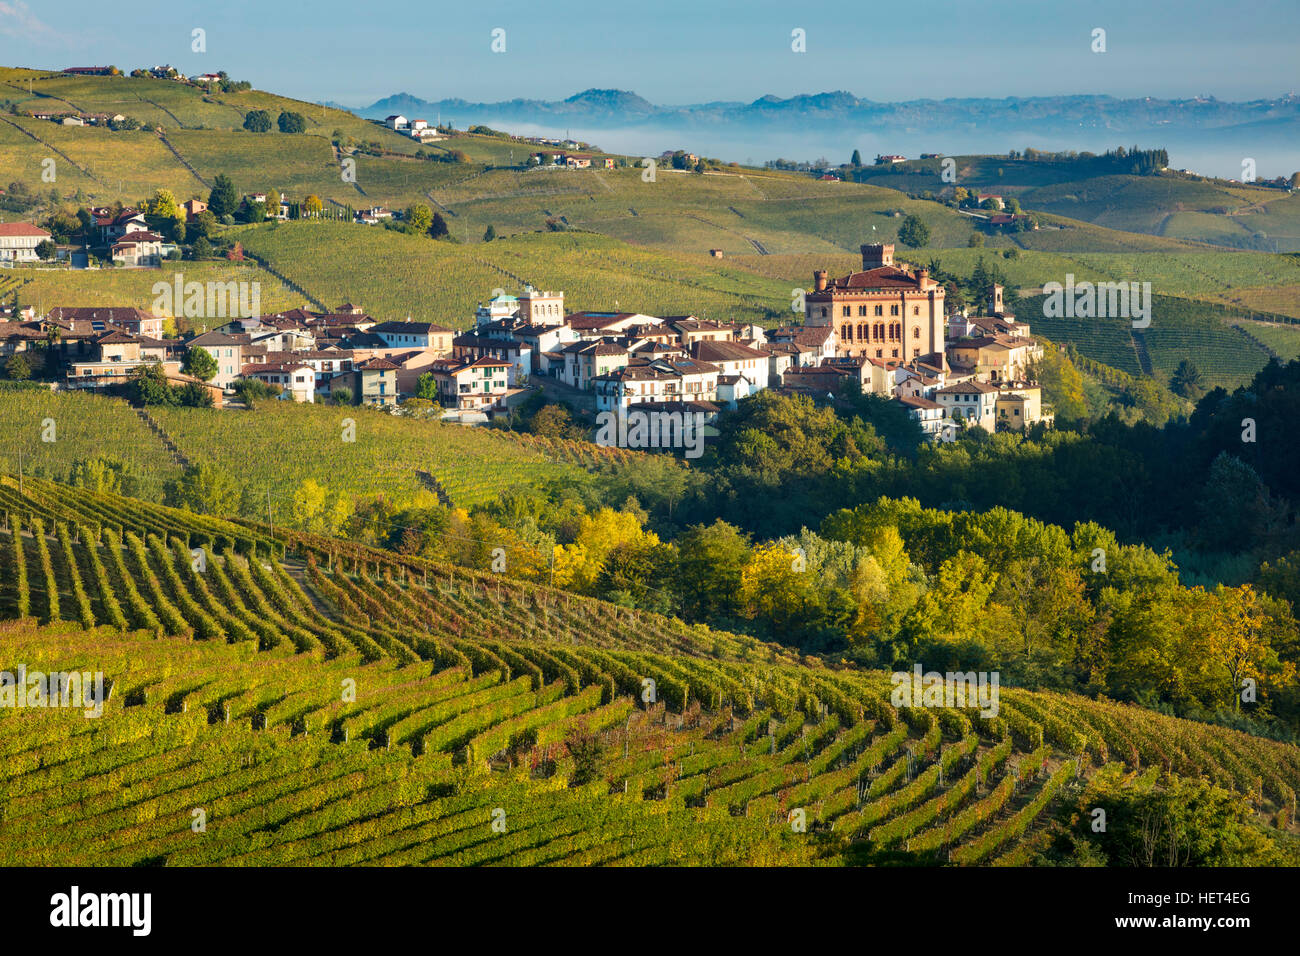 L'aube sur les vignobles et la ville de Barolo, Piemonte, Italie Banque D'Images